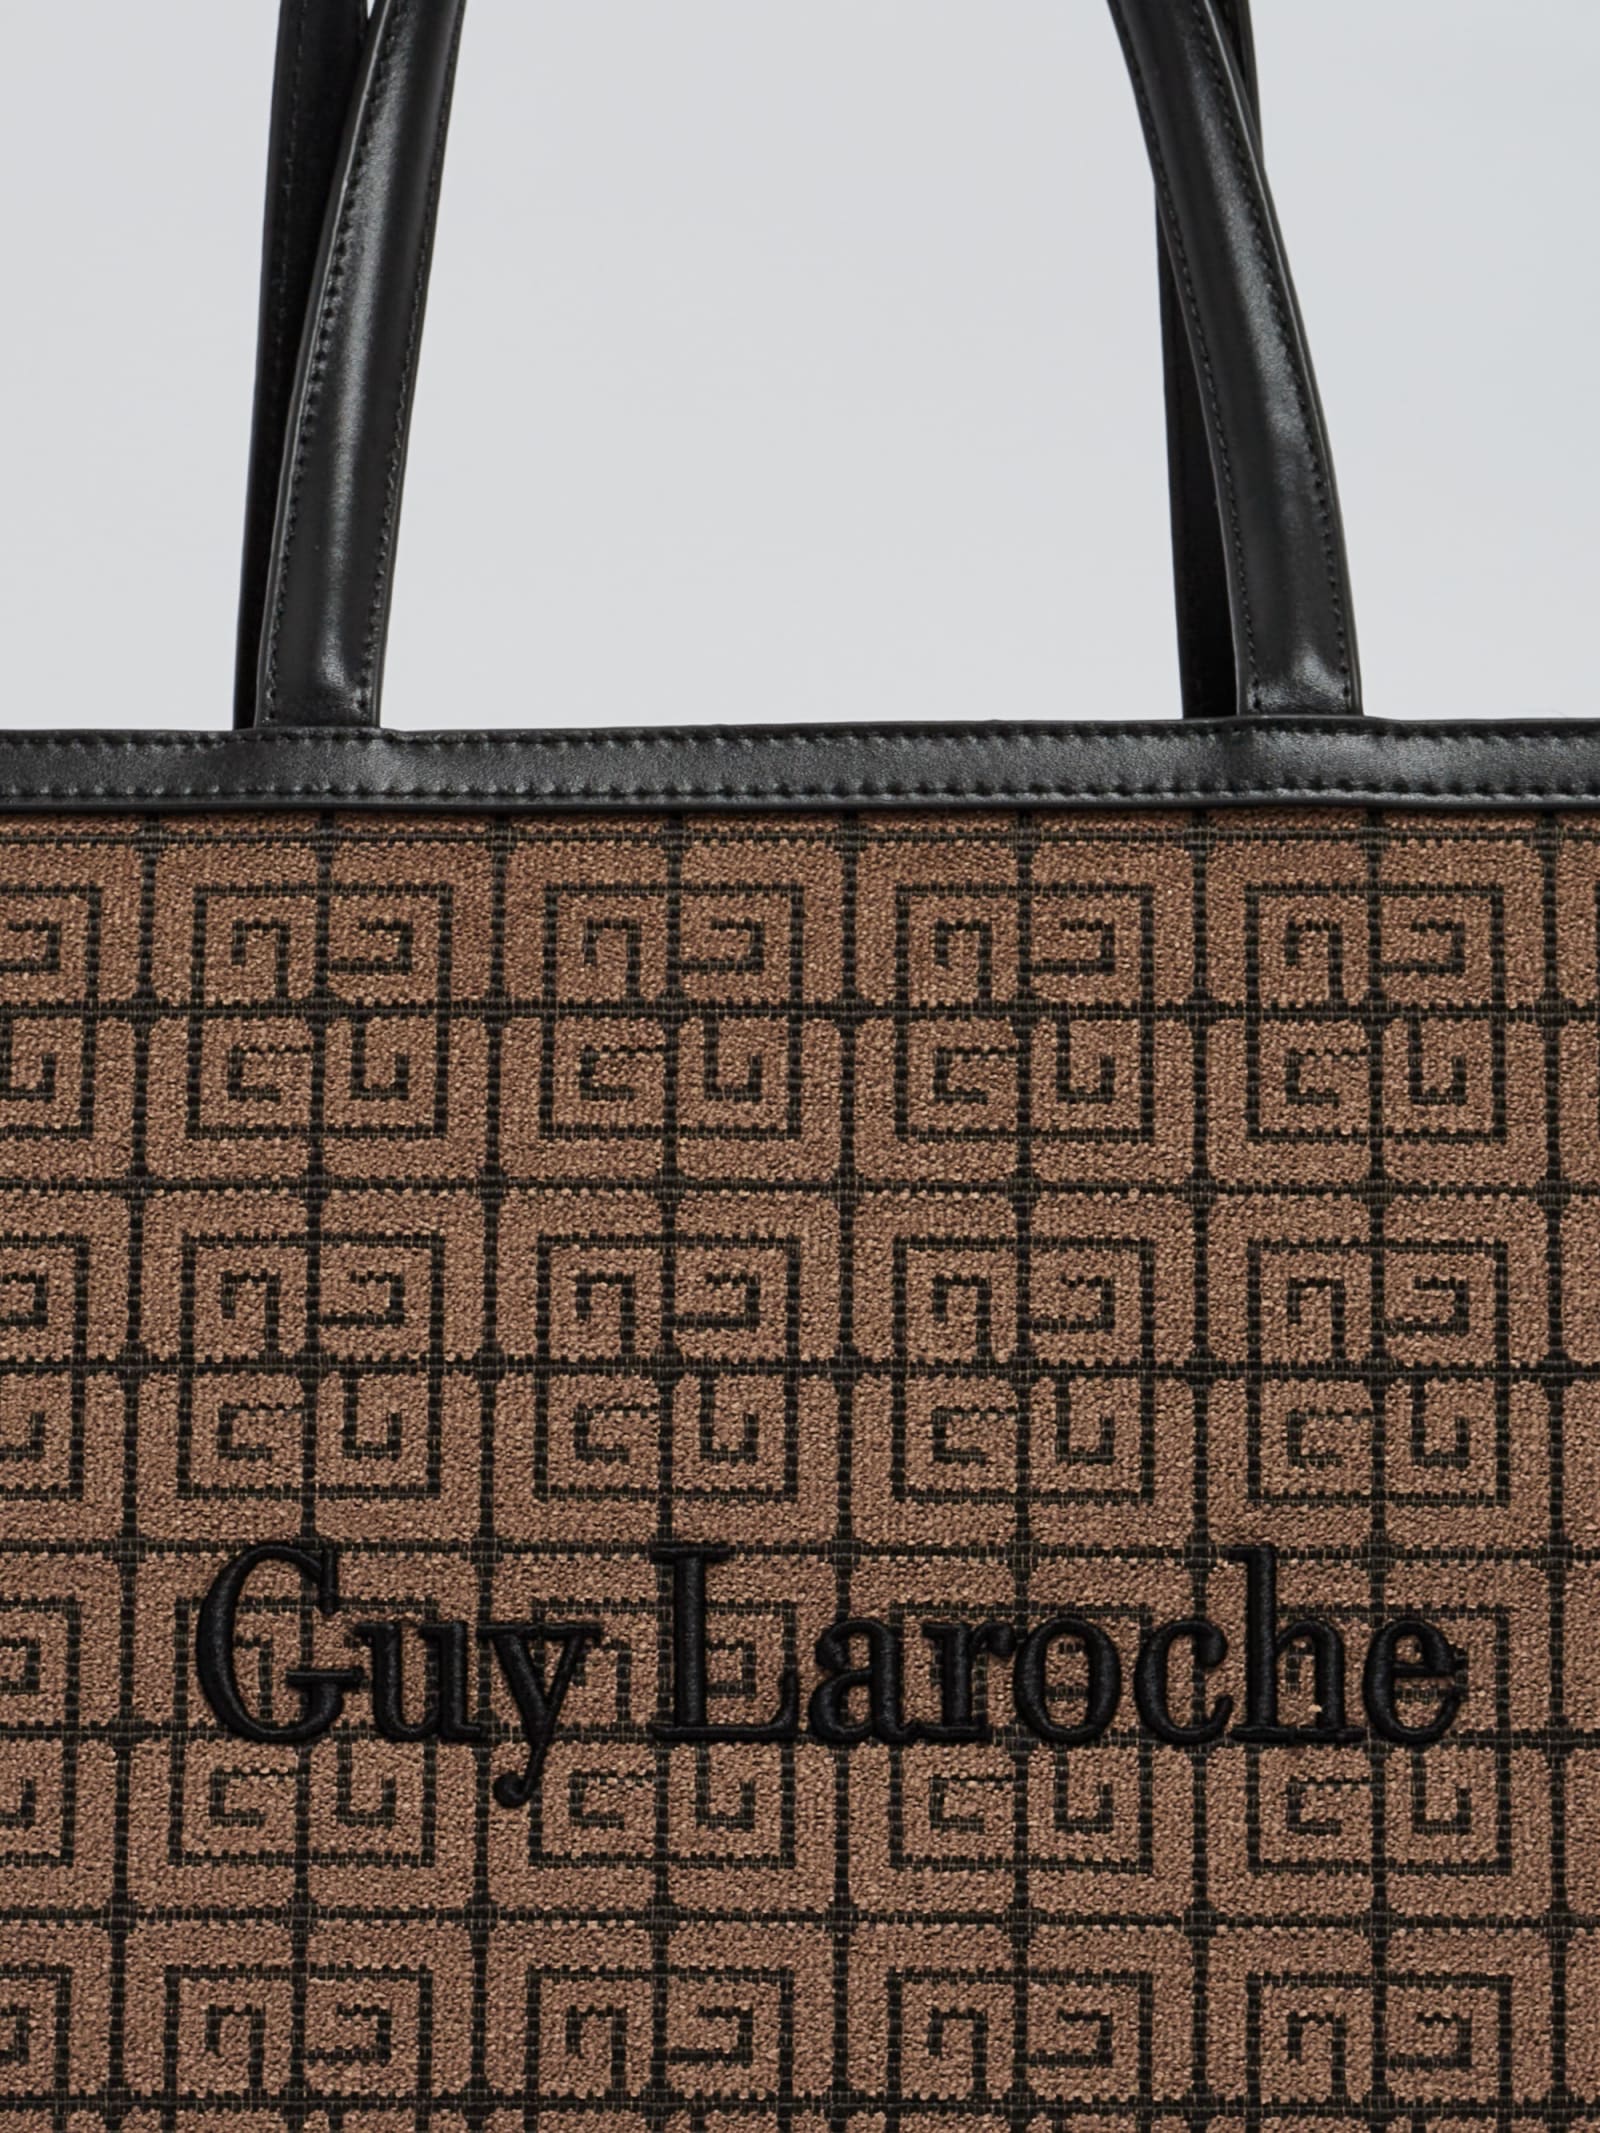 Guy Laroche Monogram Baguette Bag